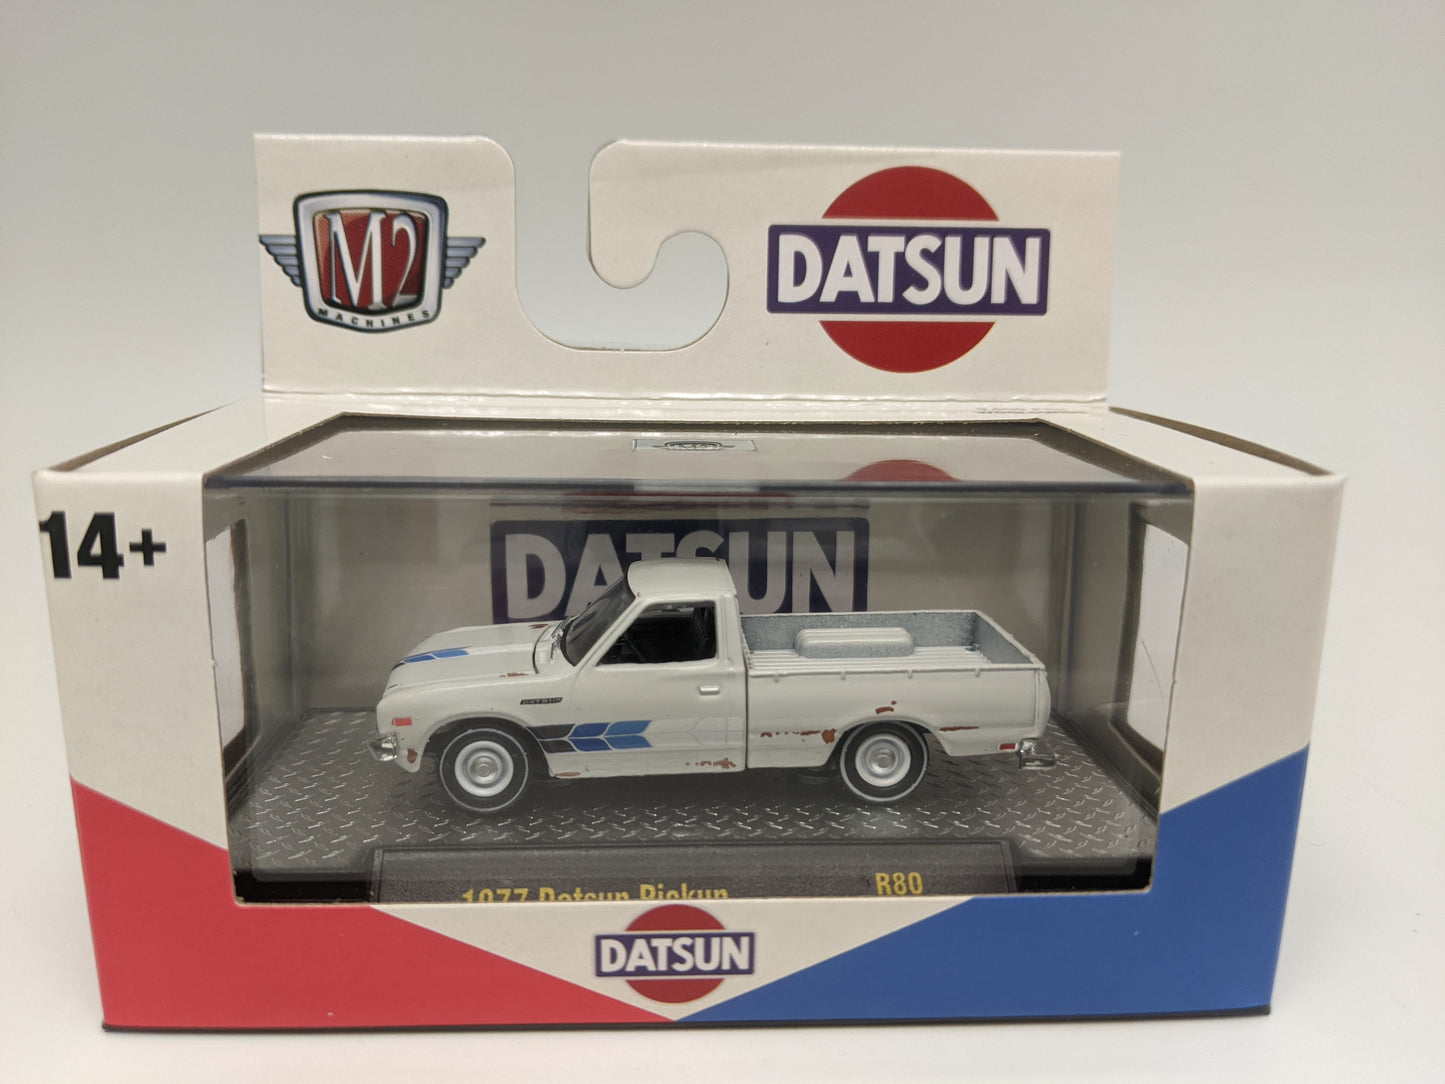 M2 1977 Datsun Pickup